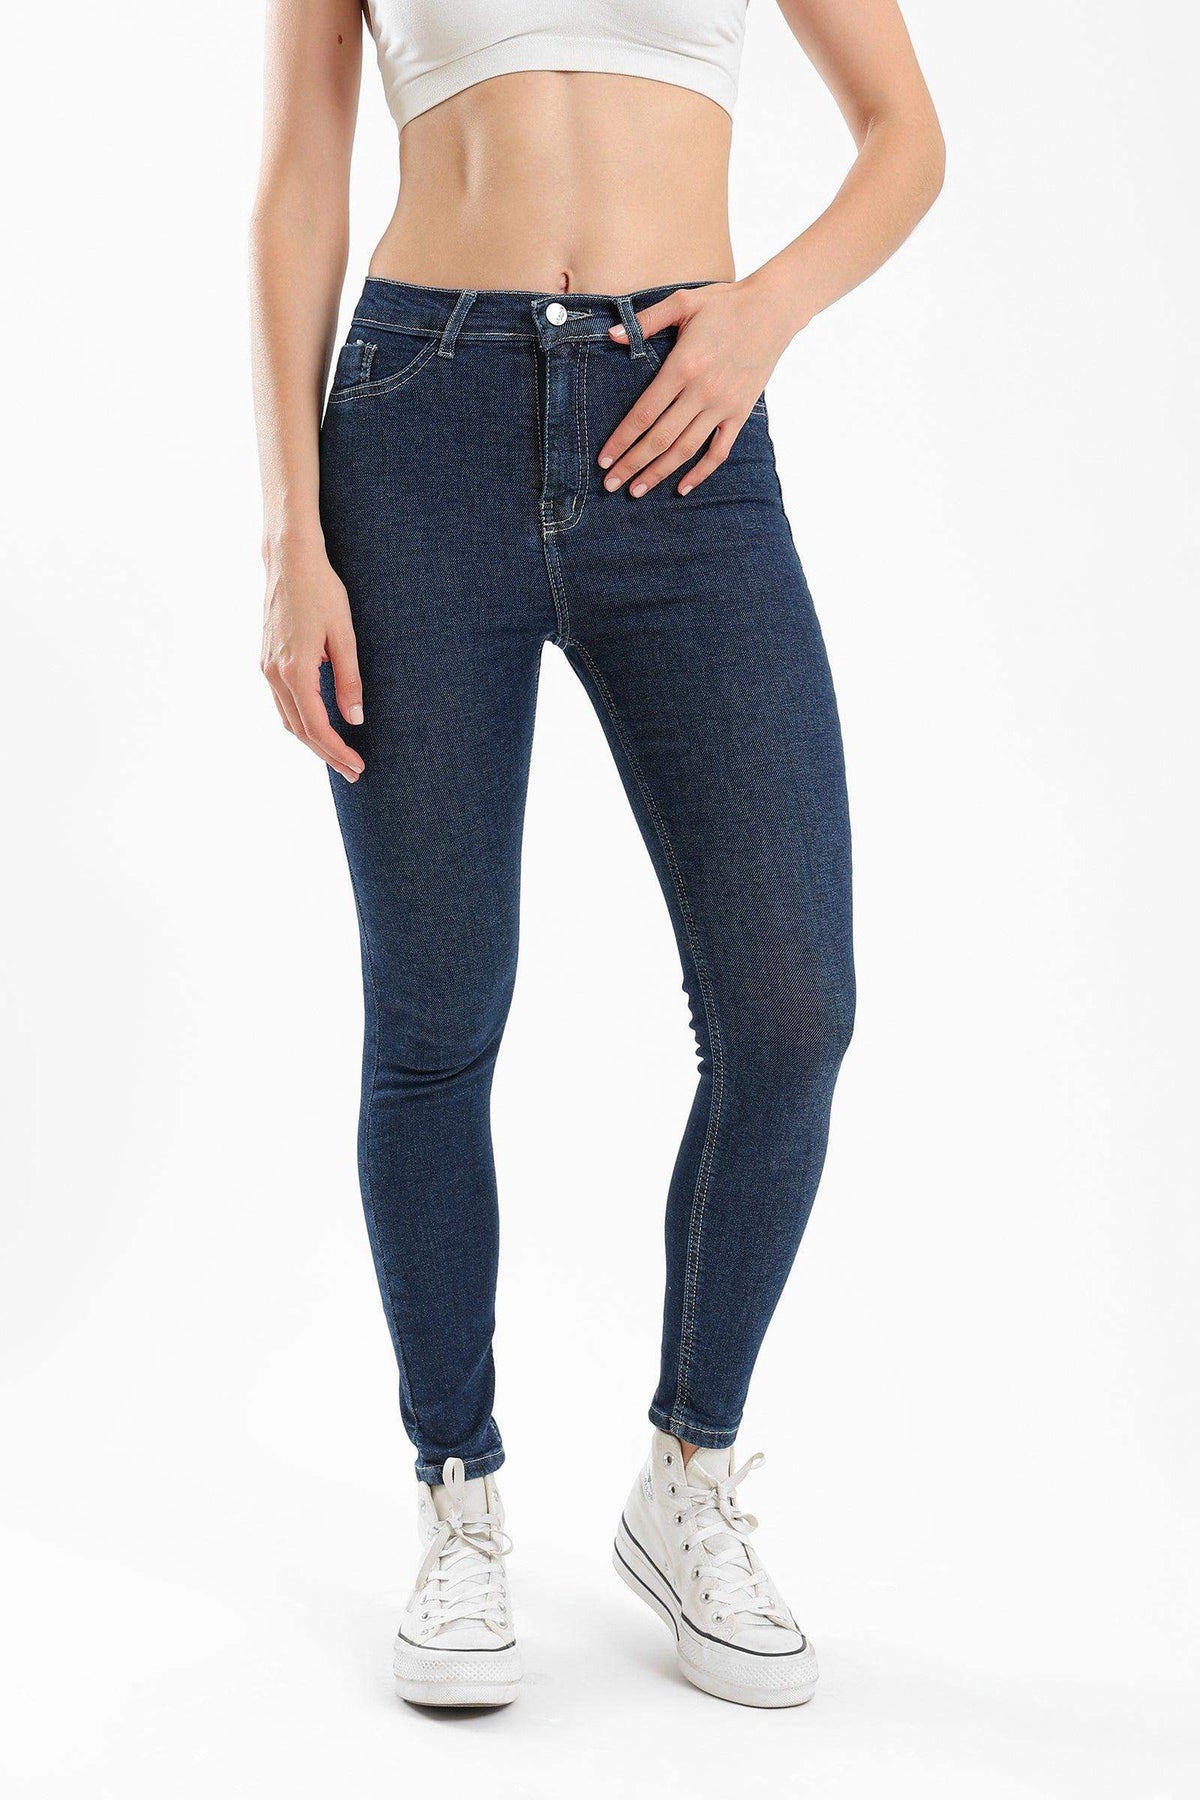 Carina High Rise Flare Jeans – Nidys Closet